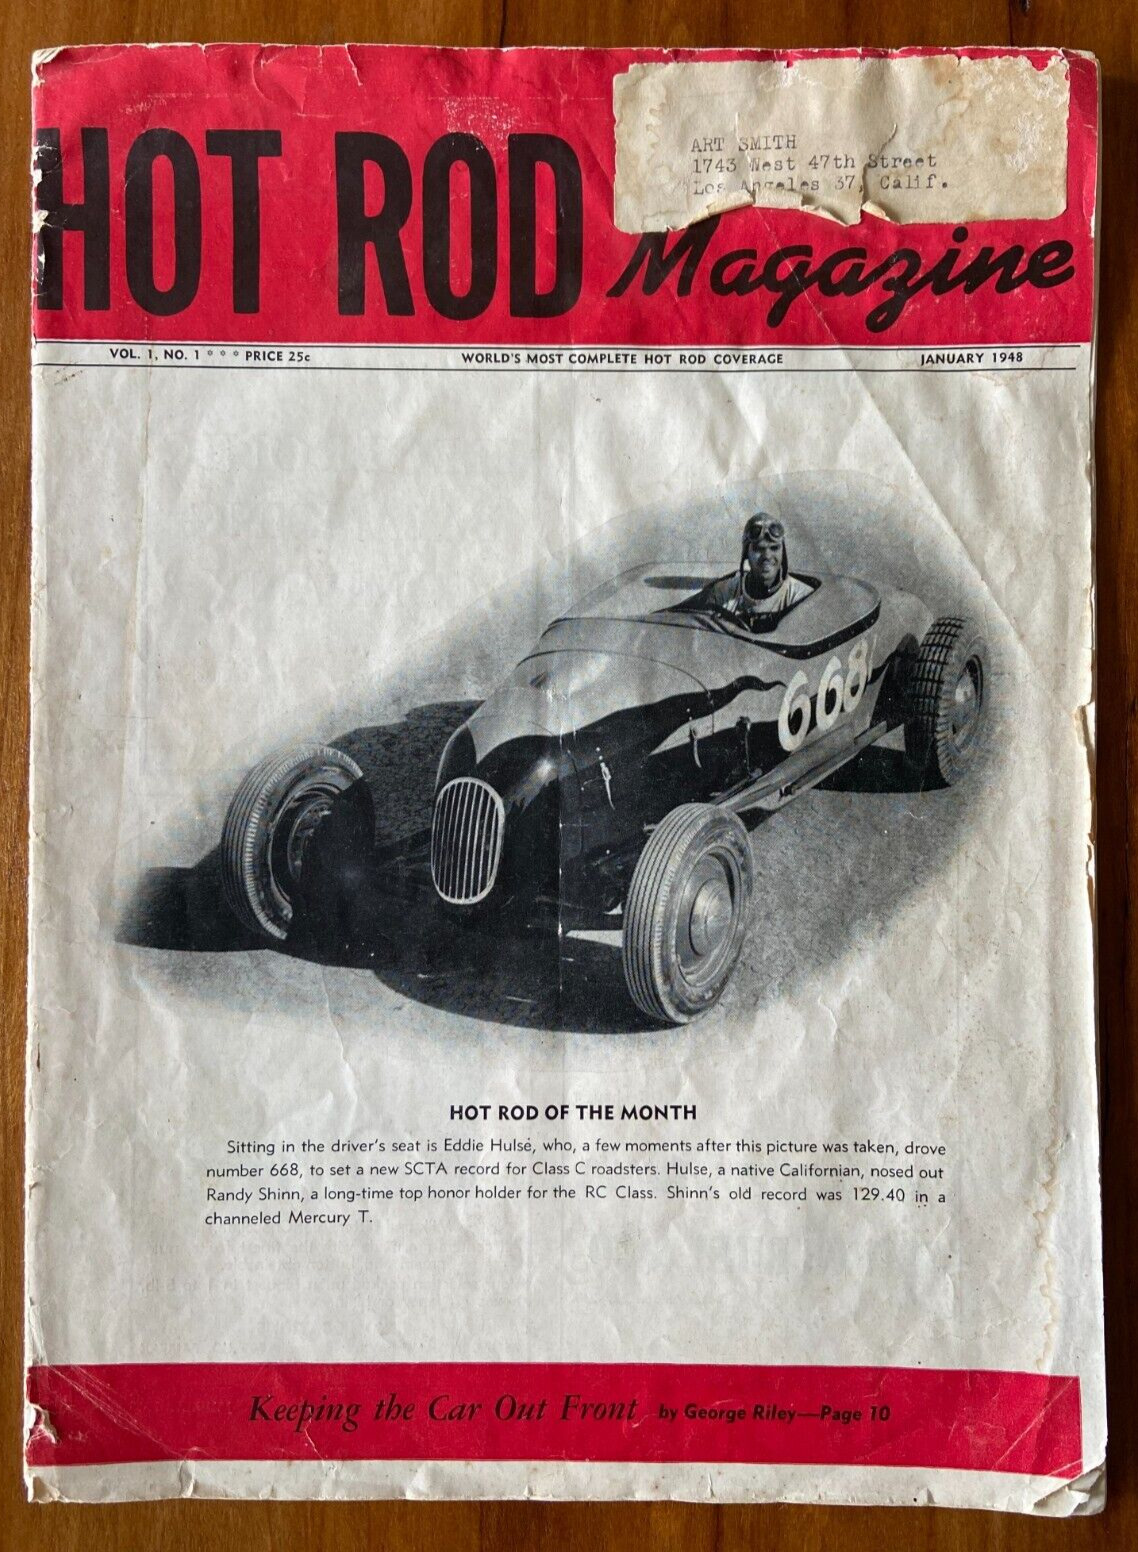 Hot Rod Magazine, Vol. 1, No. 1, January 1948, Original Issue, Very Rare